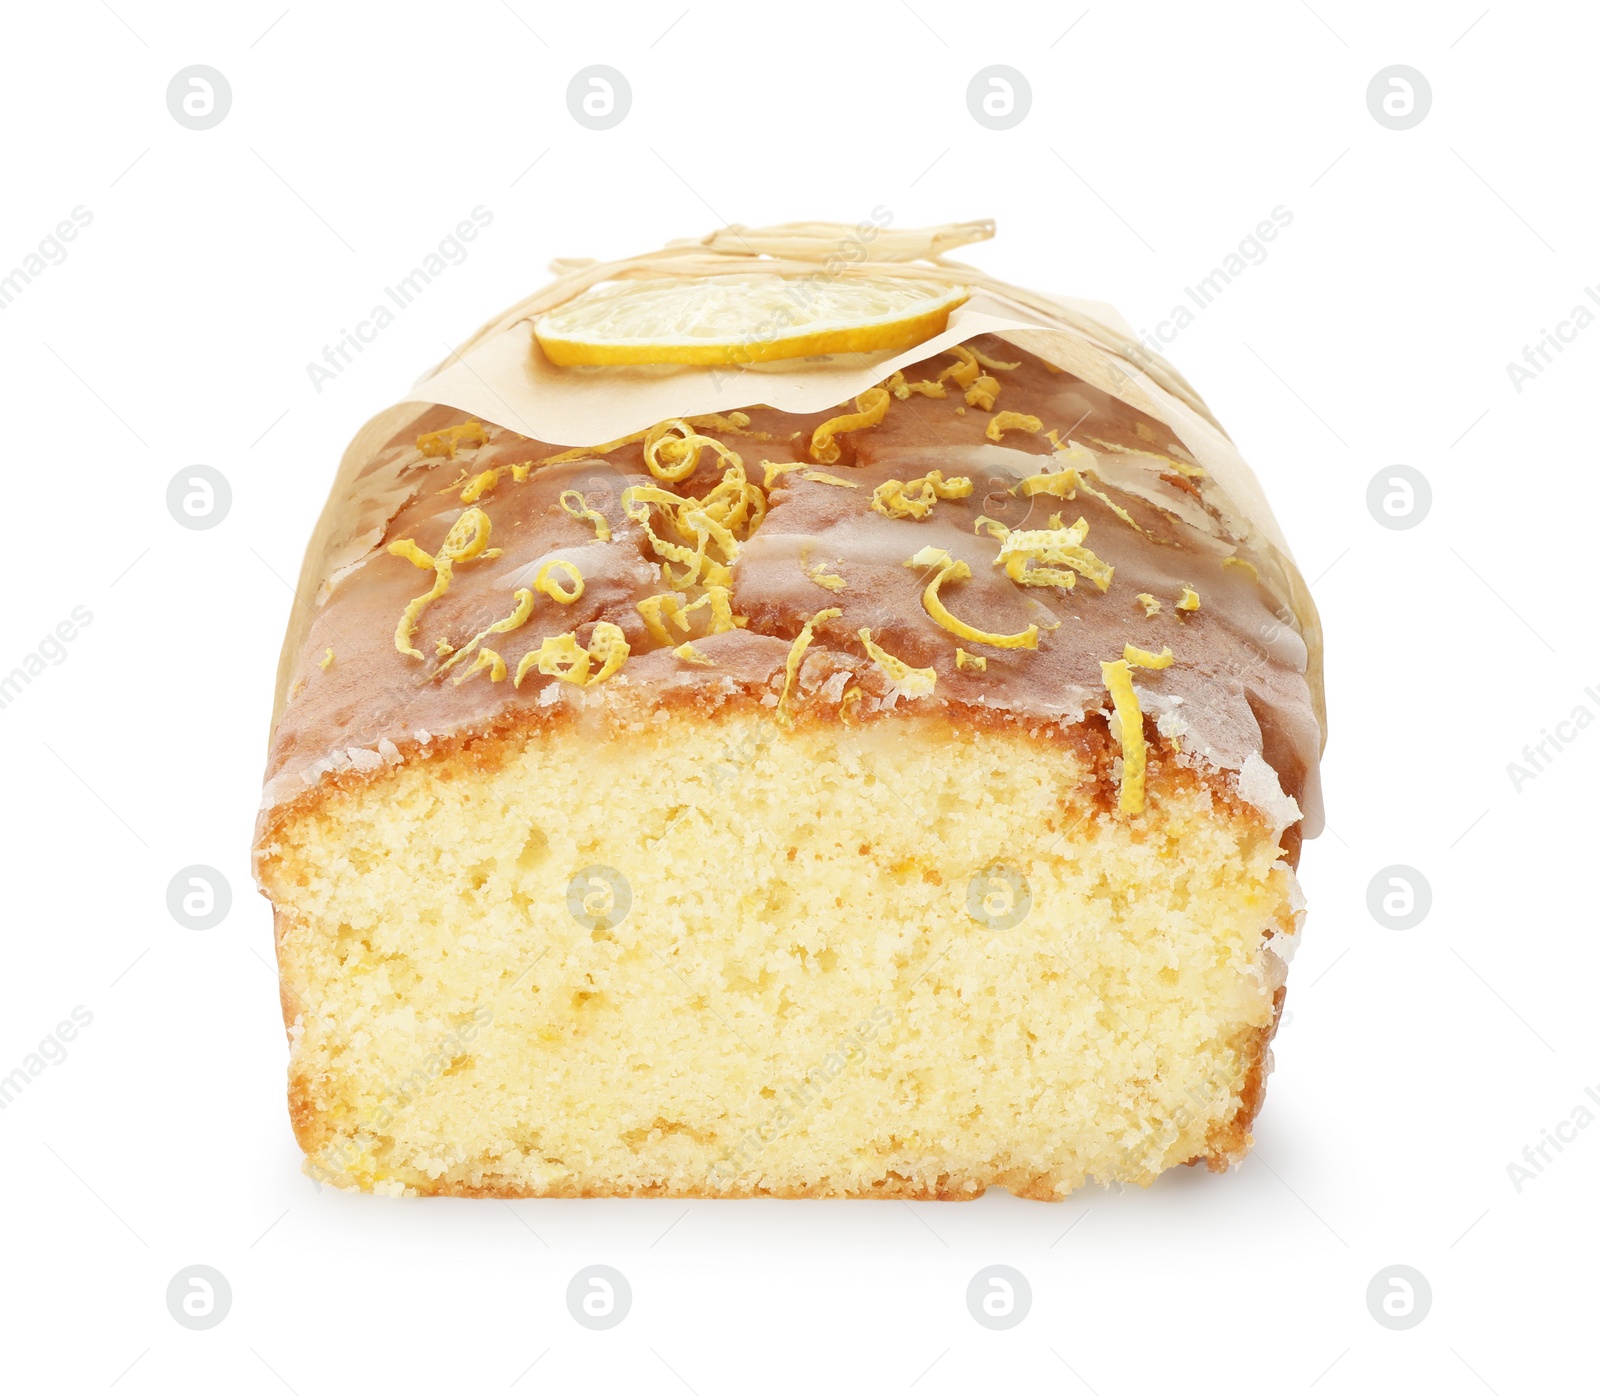 Photo of Wrapped tasty lemon cake with glaze isolated on white